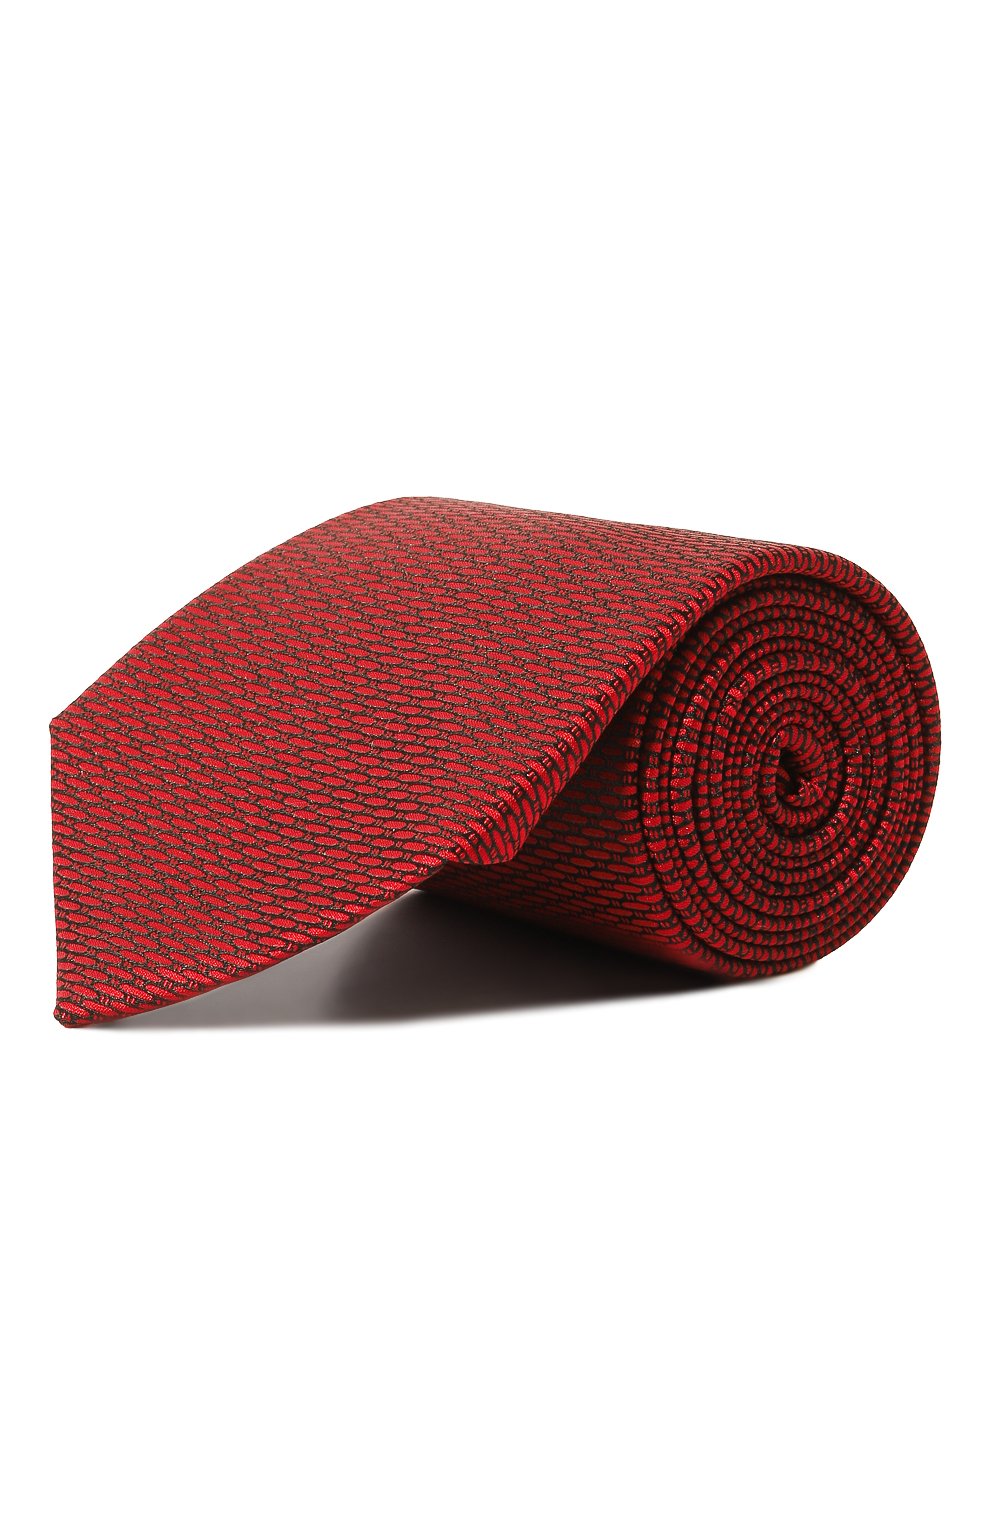 С принтом Lanvin, Шелковый галстук Lanvin, Франция, Красный, Шелк: 100%;, 13165415  - купить